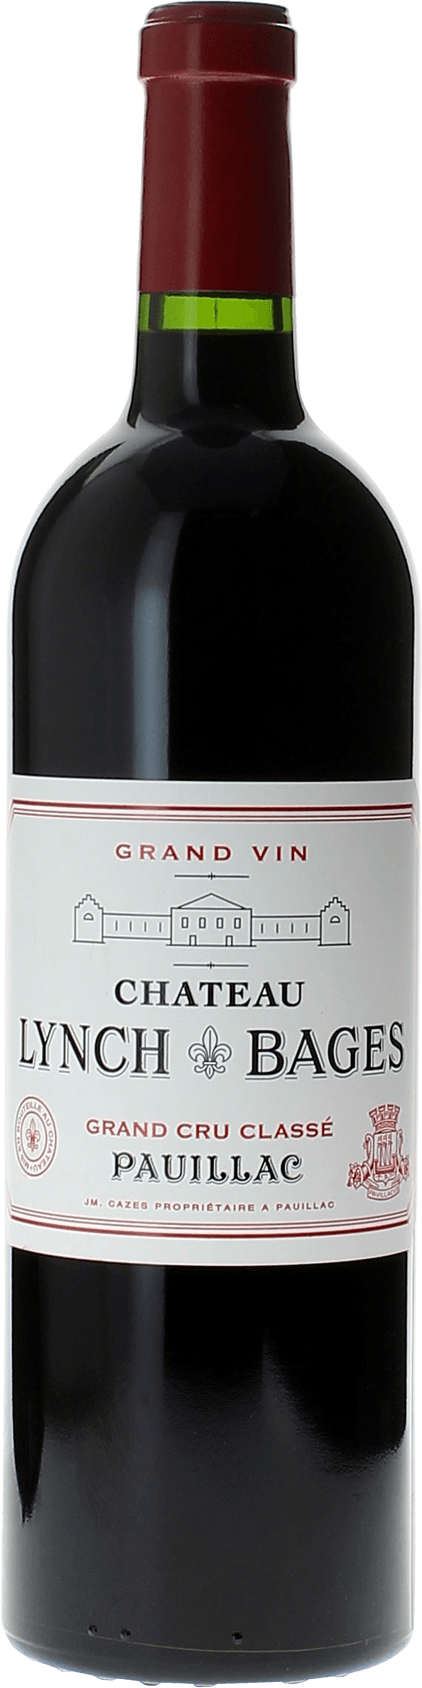 Lynch bages 1983 5 me Grand cru class Pauillac, Bordeaux rouge